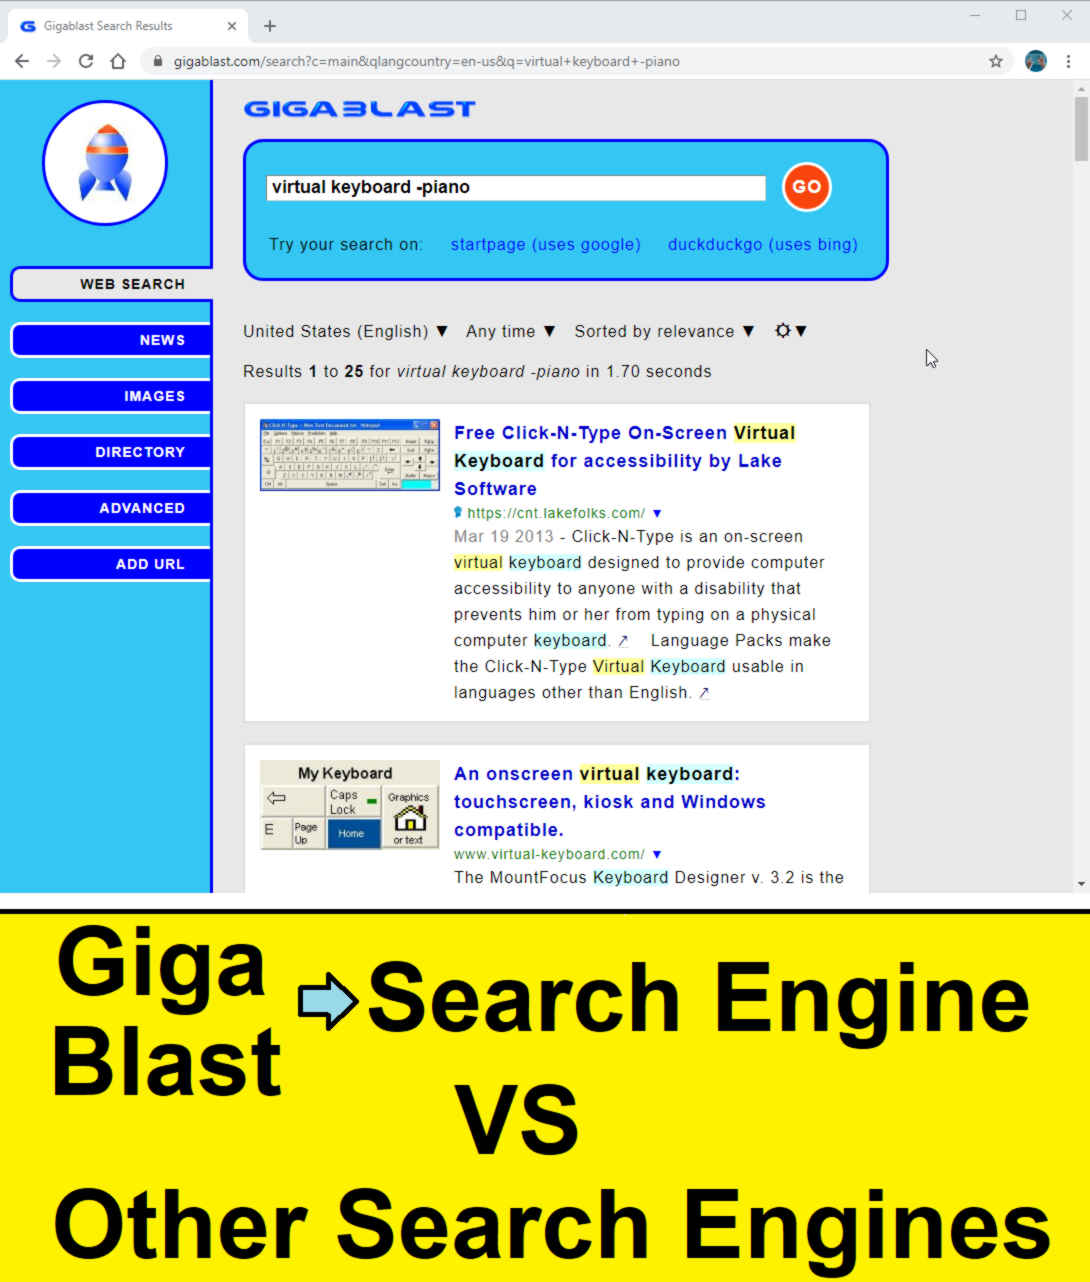 compare gigablast search engine